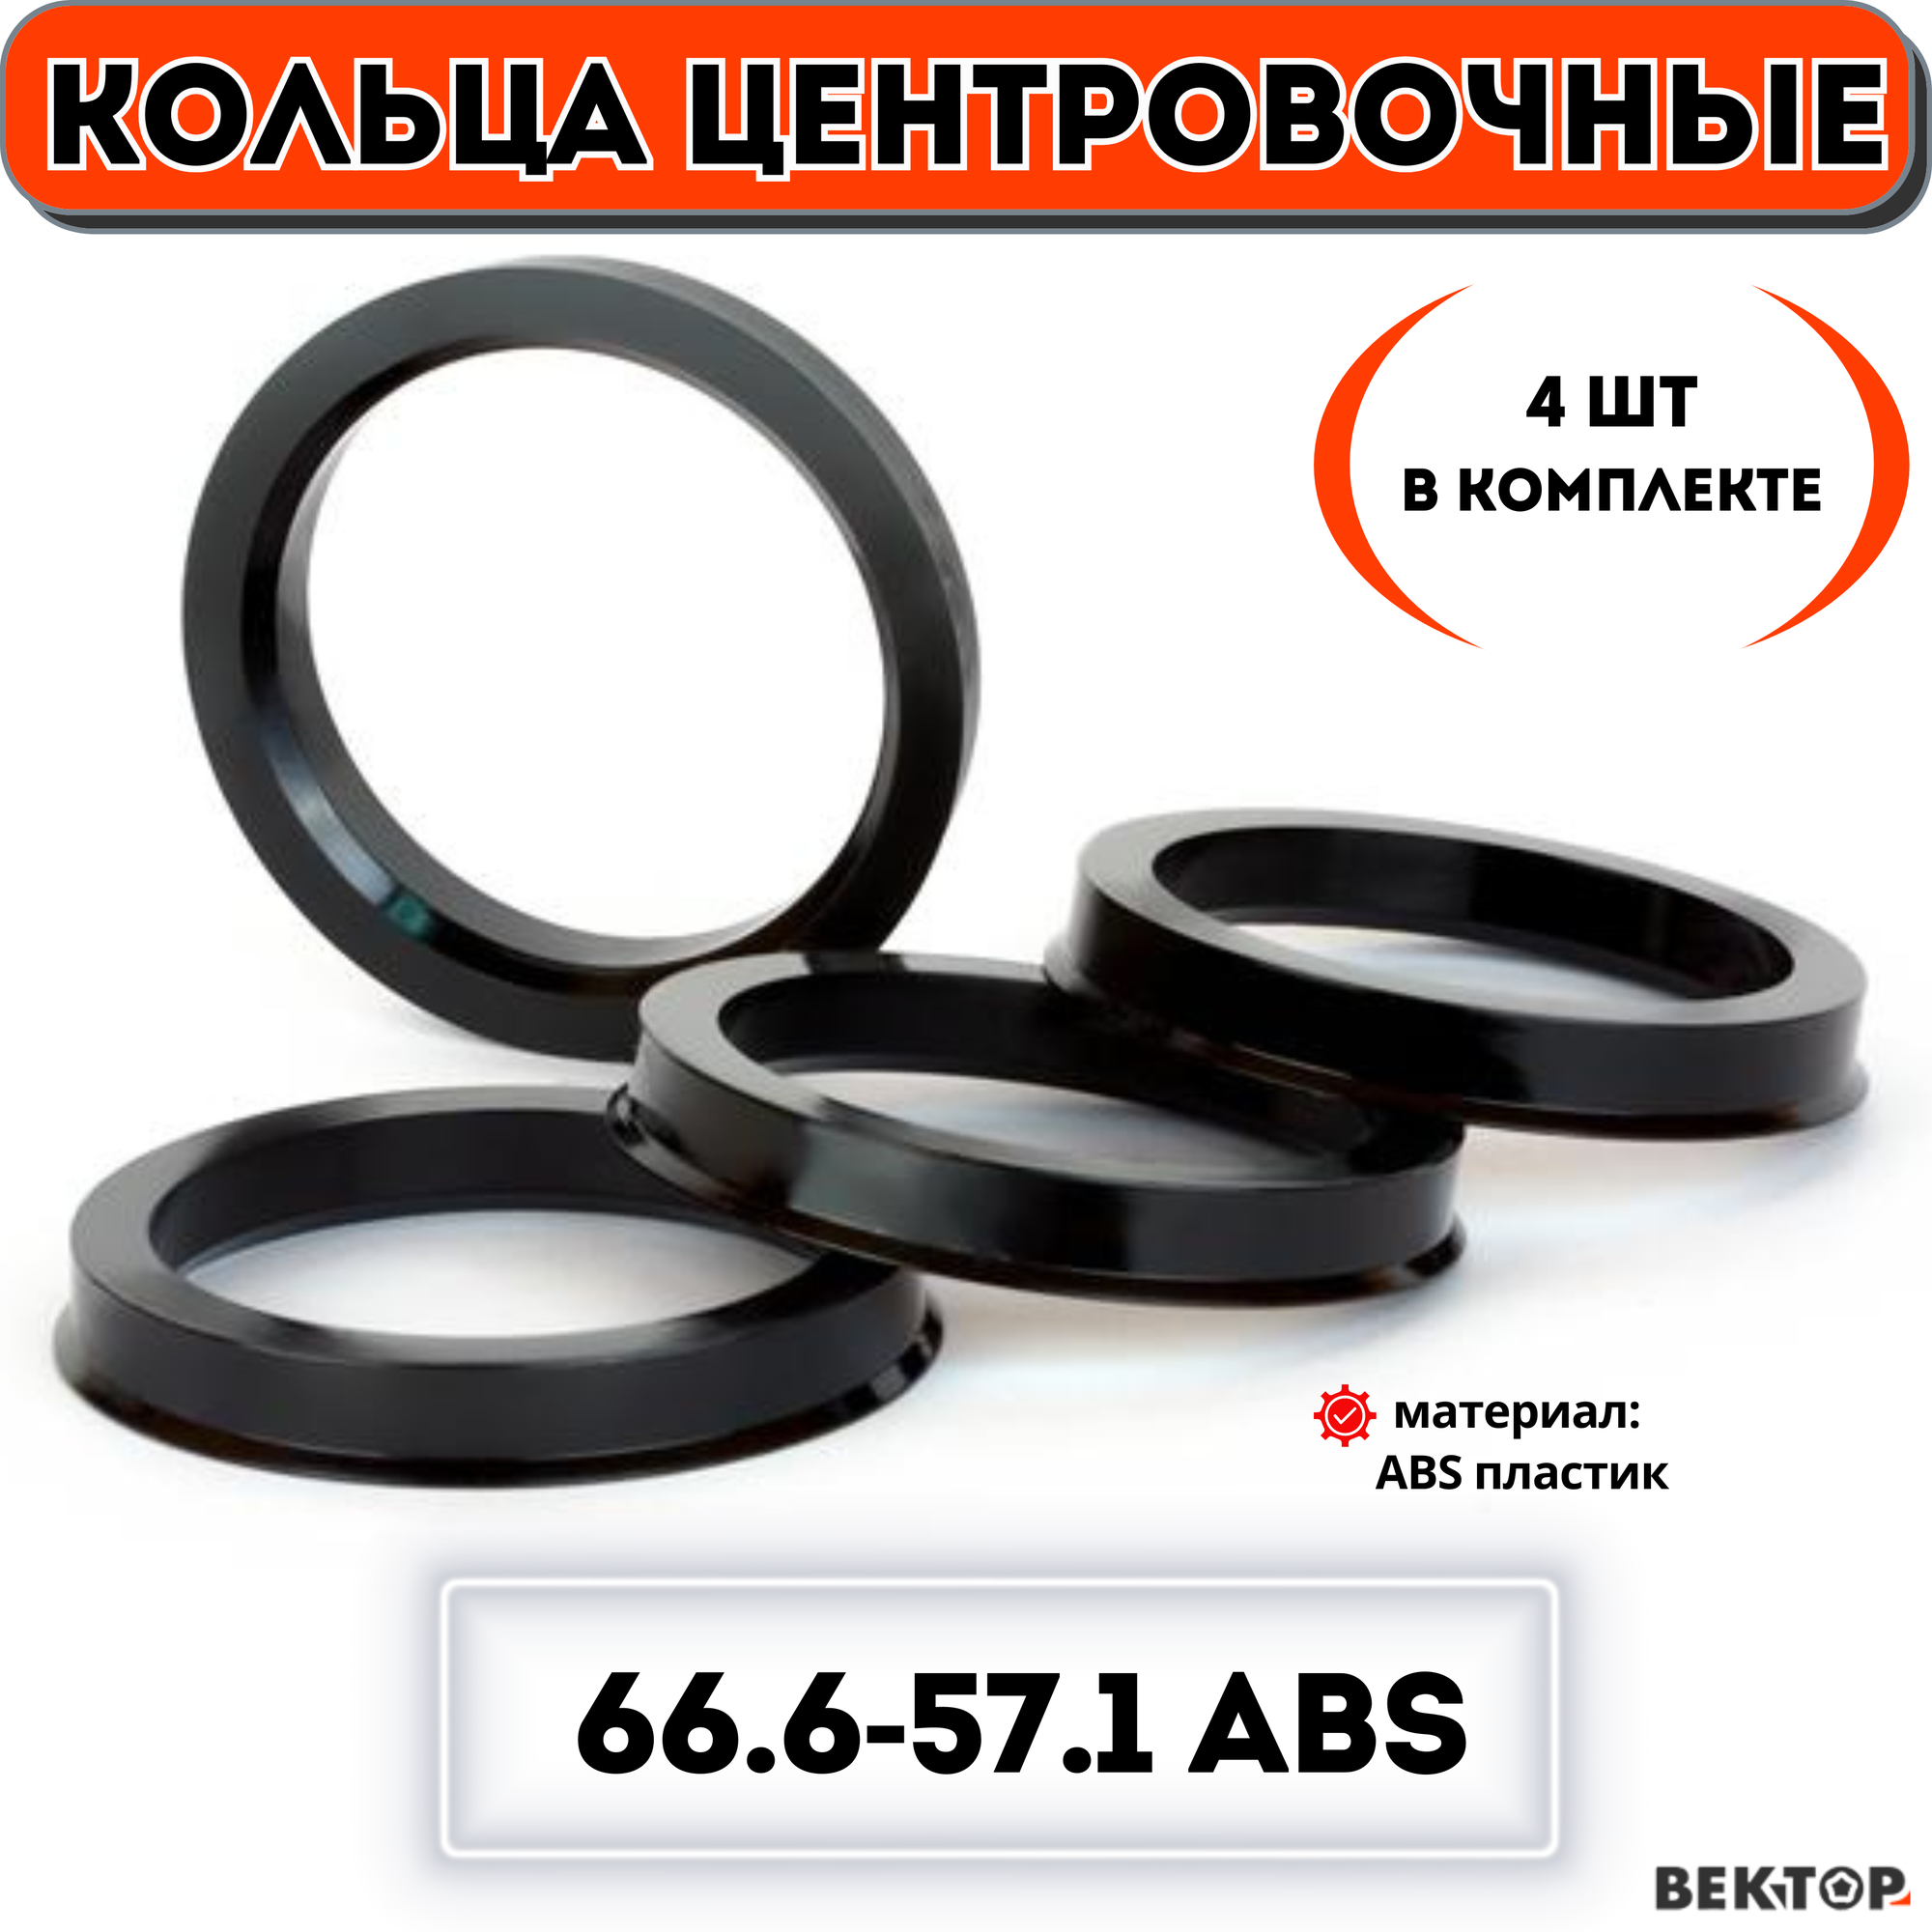 Кольца центровочные для автомобильных дисков 66,6-57,1 ABS (к-т 4 шт.)